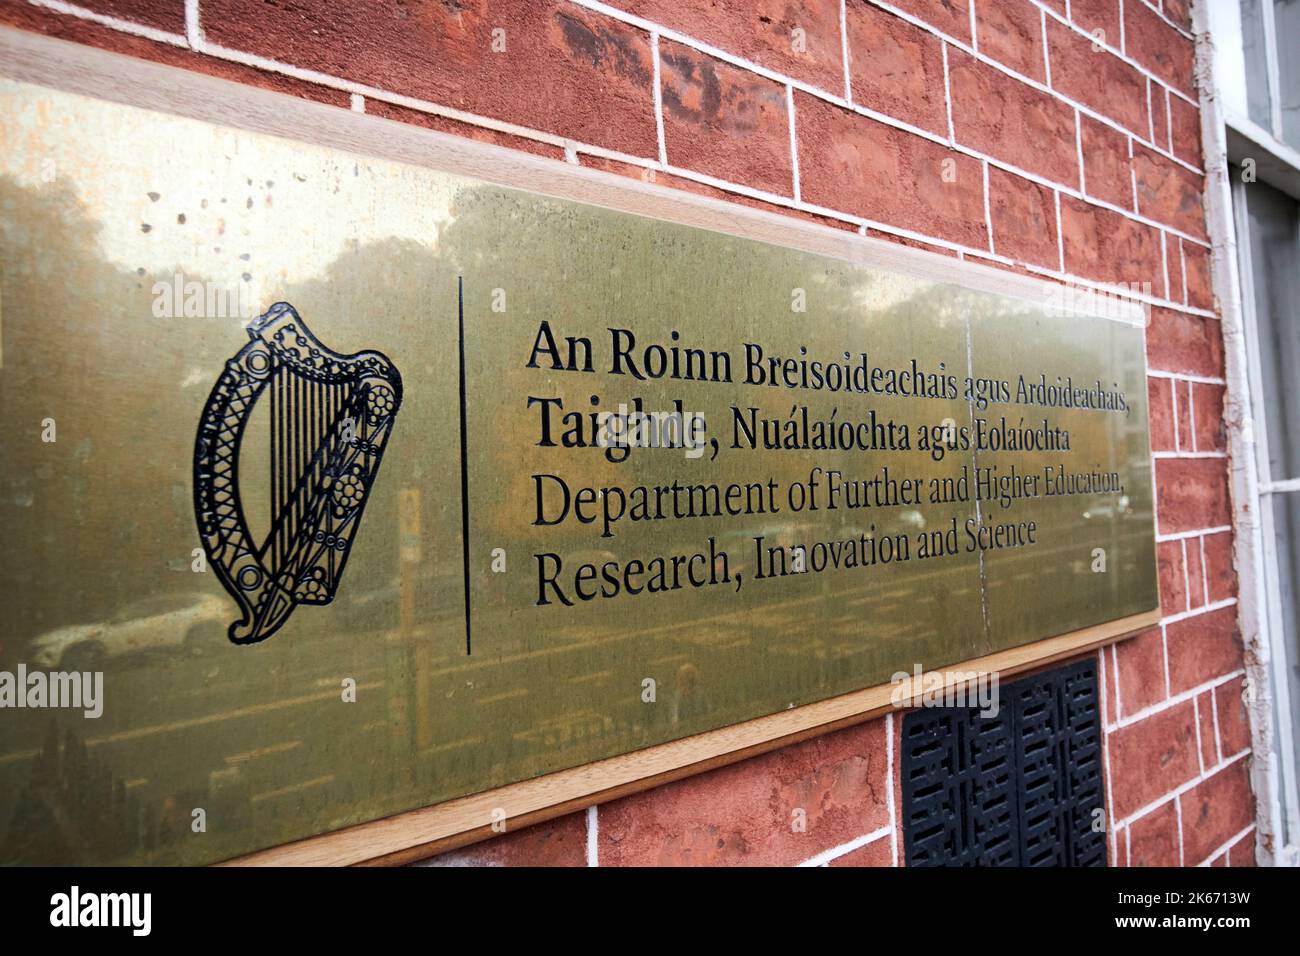 département de l'enseignement supérieur et supérieur recherche innovation et science 52 st stephens green dublin république d'irlande Banque D'Images